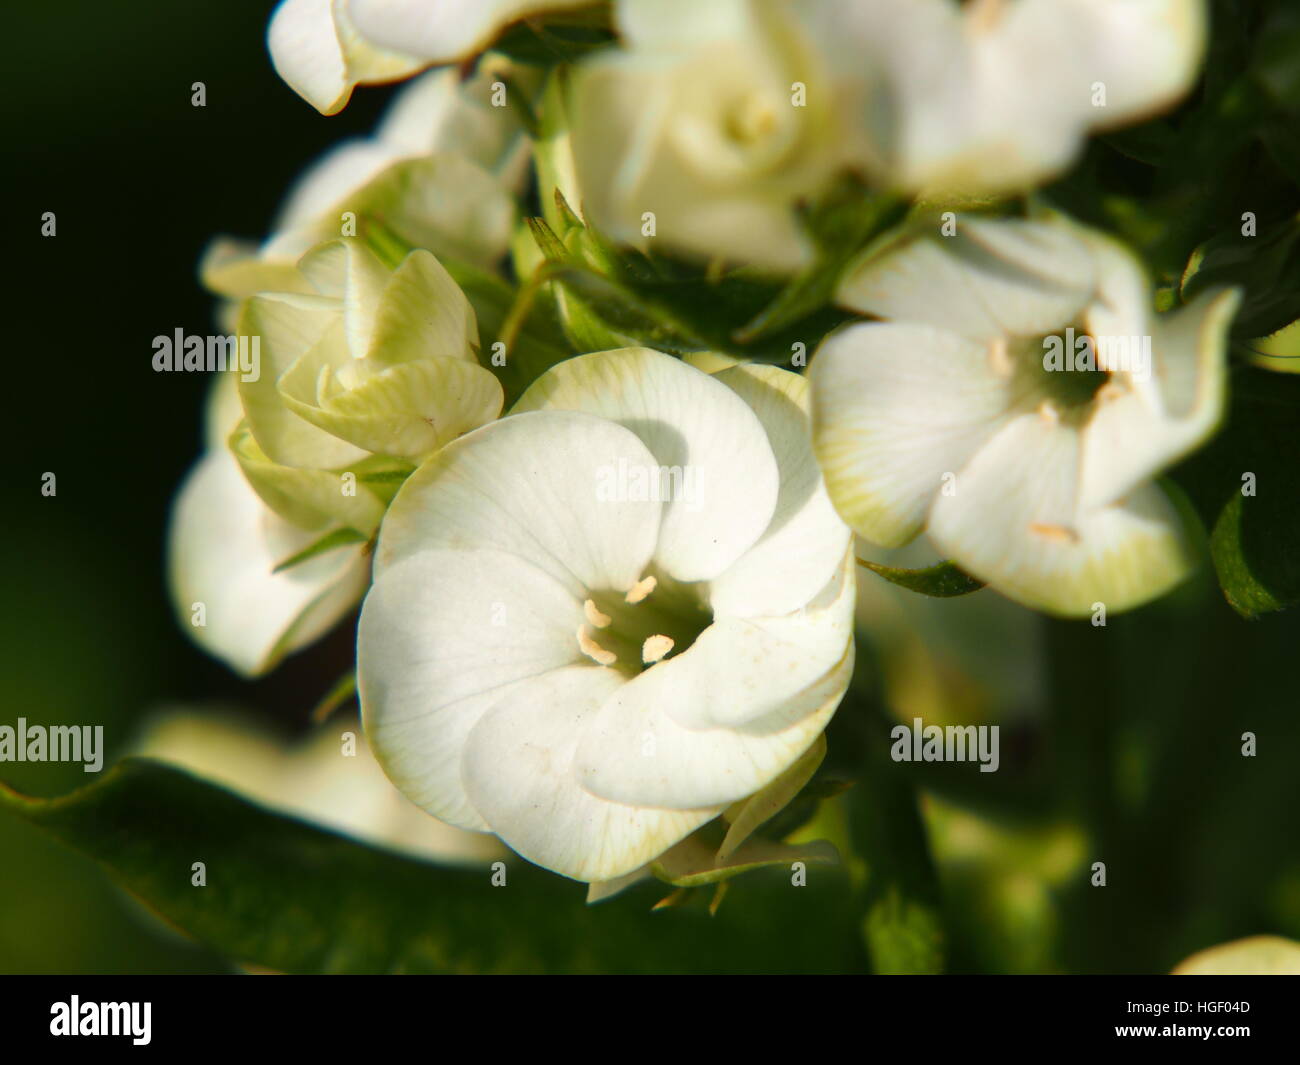 Beautiful white and green flowers of Phlox paniculata 'Jade' - garden phlox Stock Photo